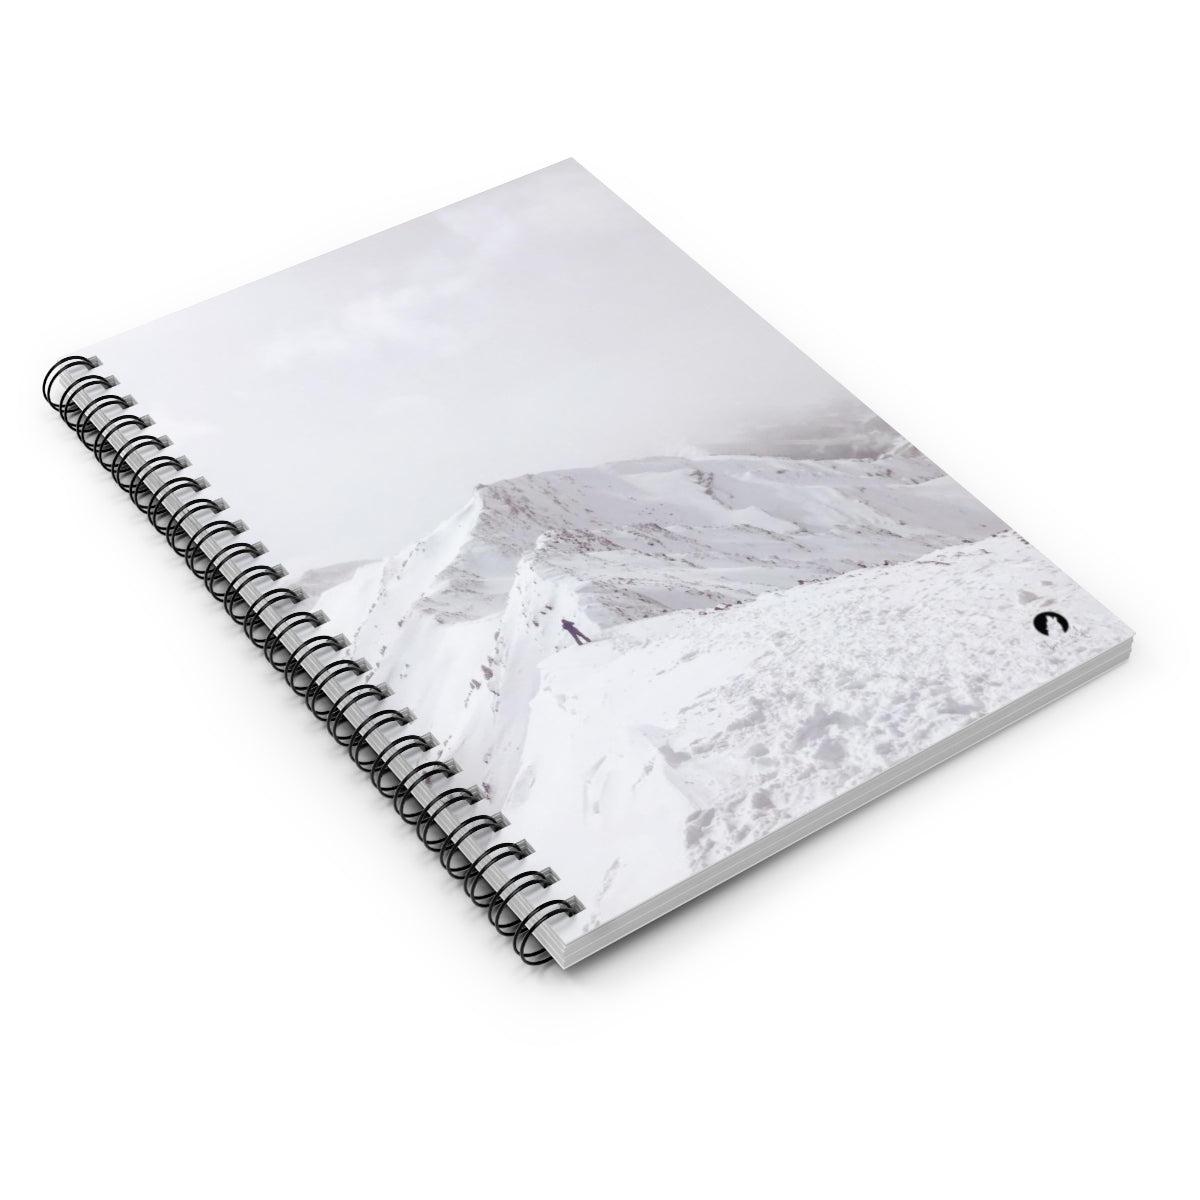 Aspen Mountains Notebook